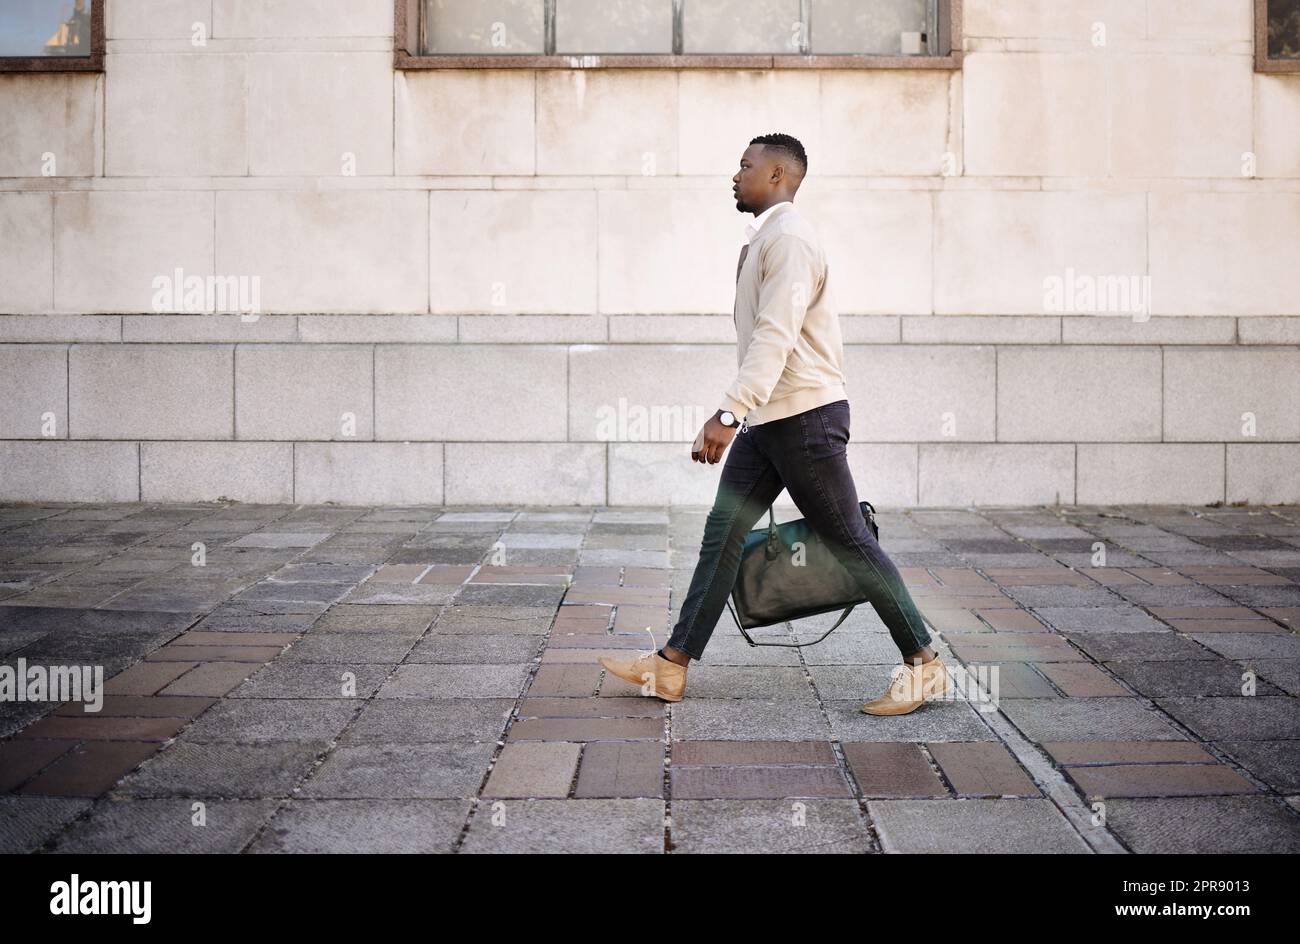 Ein afroamerikanischer Geschäftsmann, der mit seinem Gepäck durch die Stadt läuft und gleichzeitig in der Stadt stilvoll aussieht Stockfoto